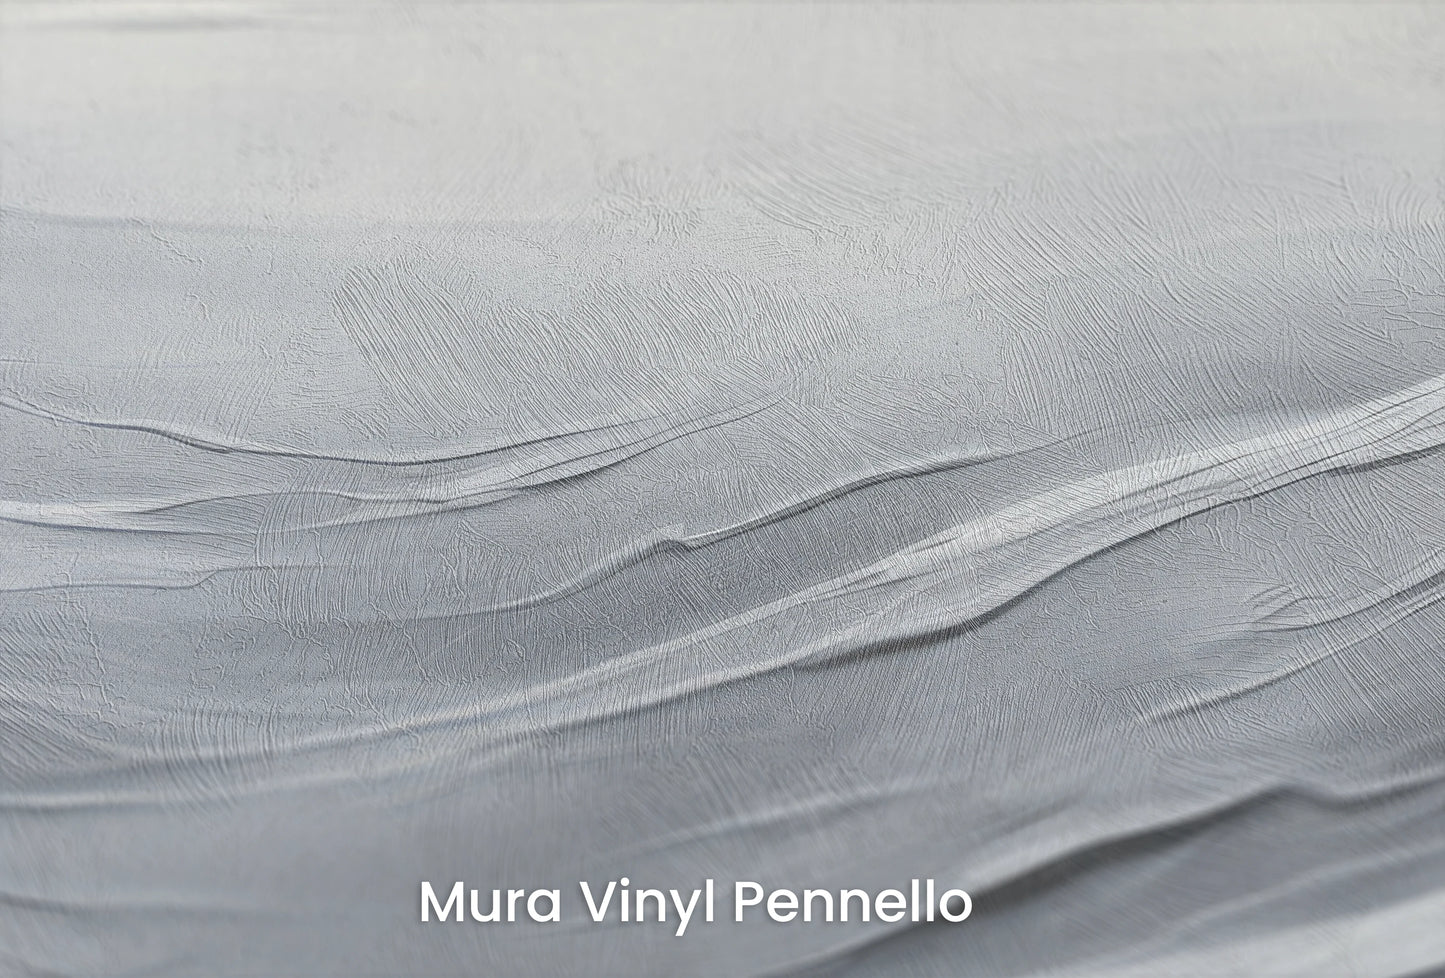 Zbliżenie na artystyczną fototapetę o nazwie Serenity Waves na podłożu Mura Vinyl Pennello - faktura pociągnięć pędzla malarskiego.